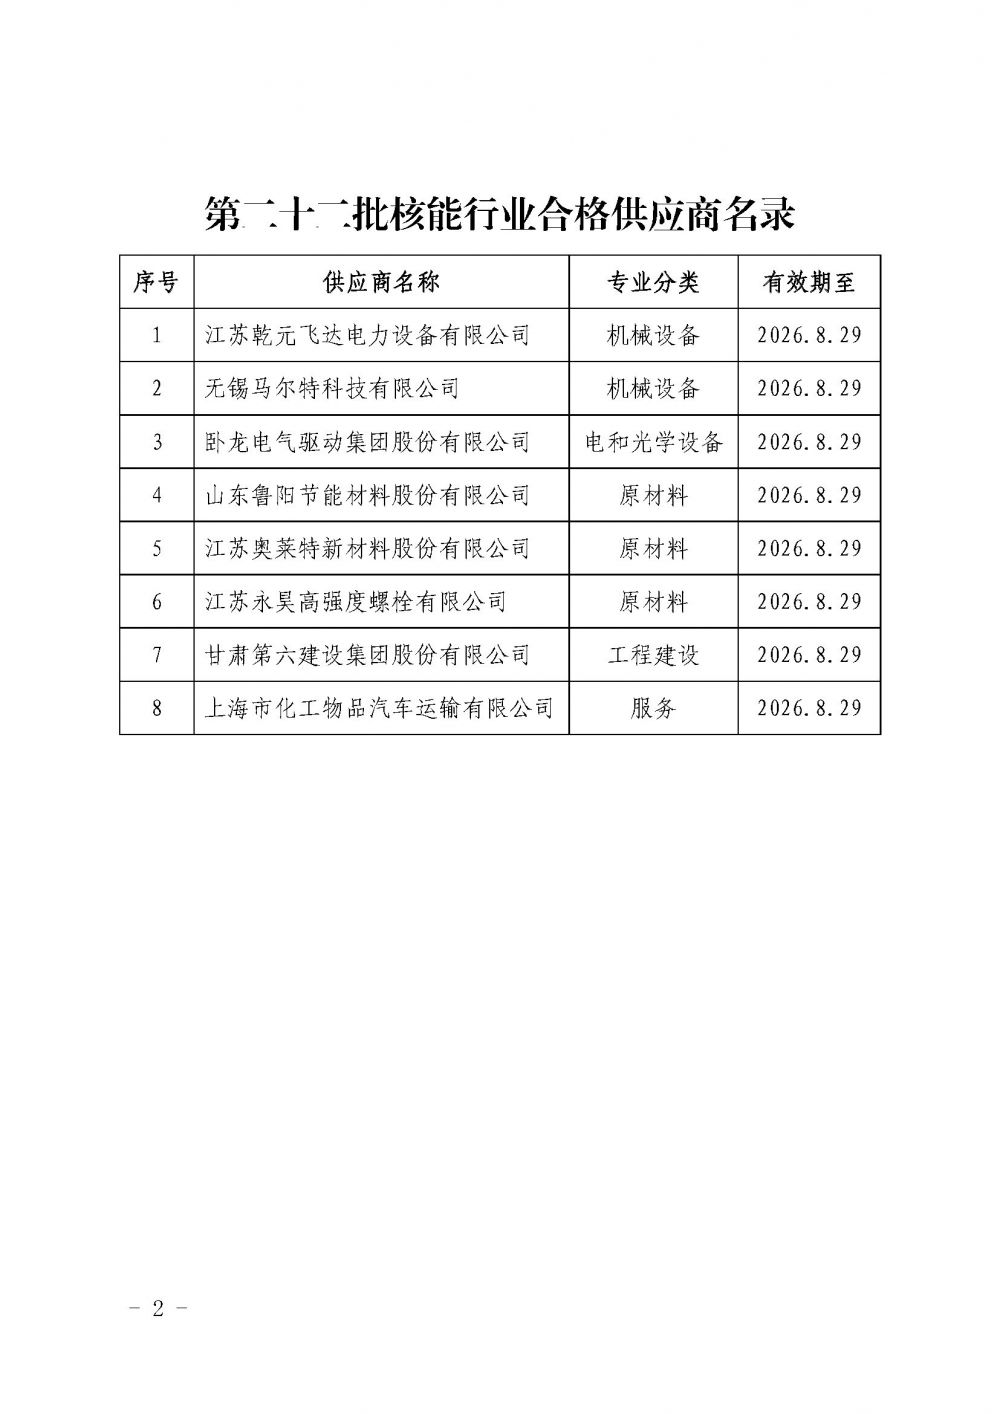 中国核能行业协会关于发布第二十二批核能行业合格供应商名录的公告_页面_2.jpg